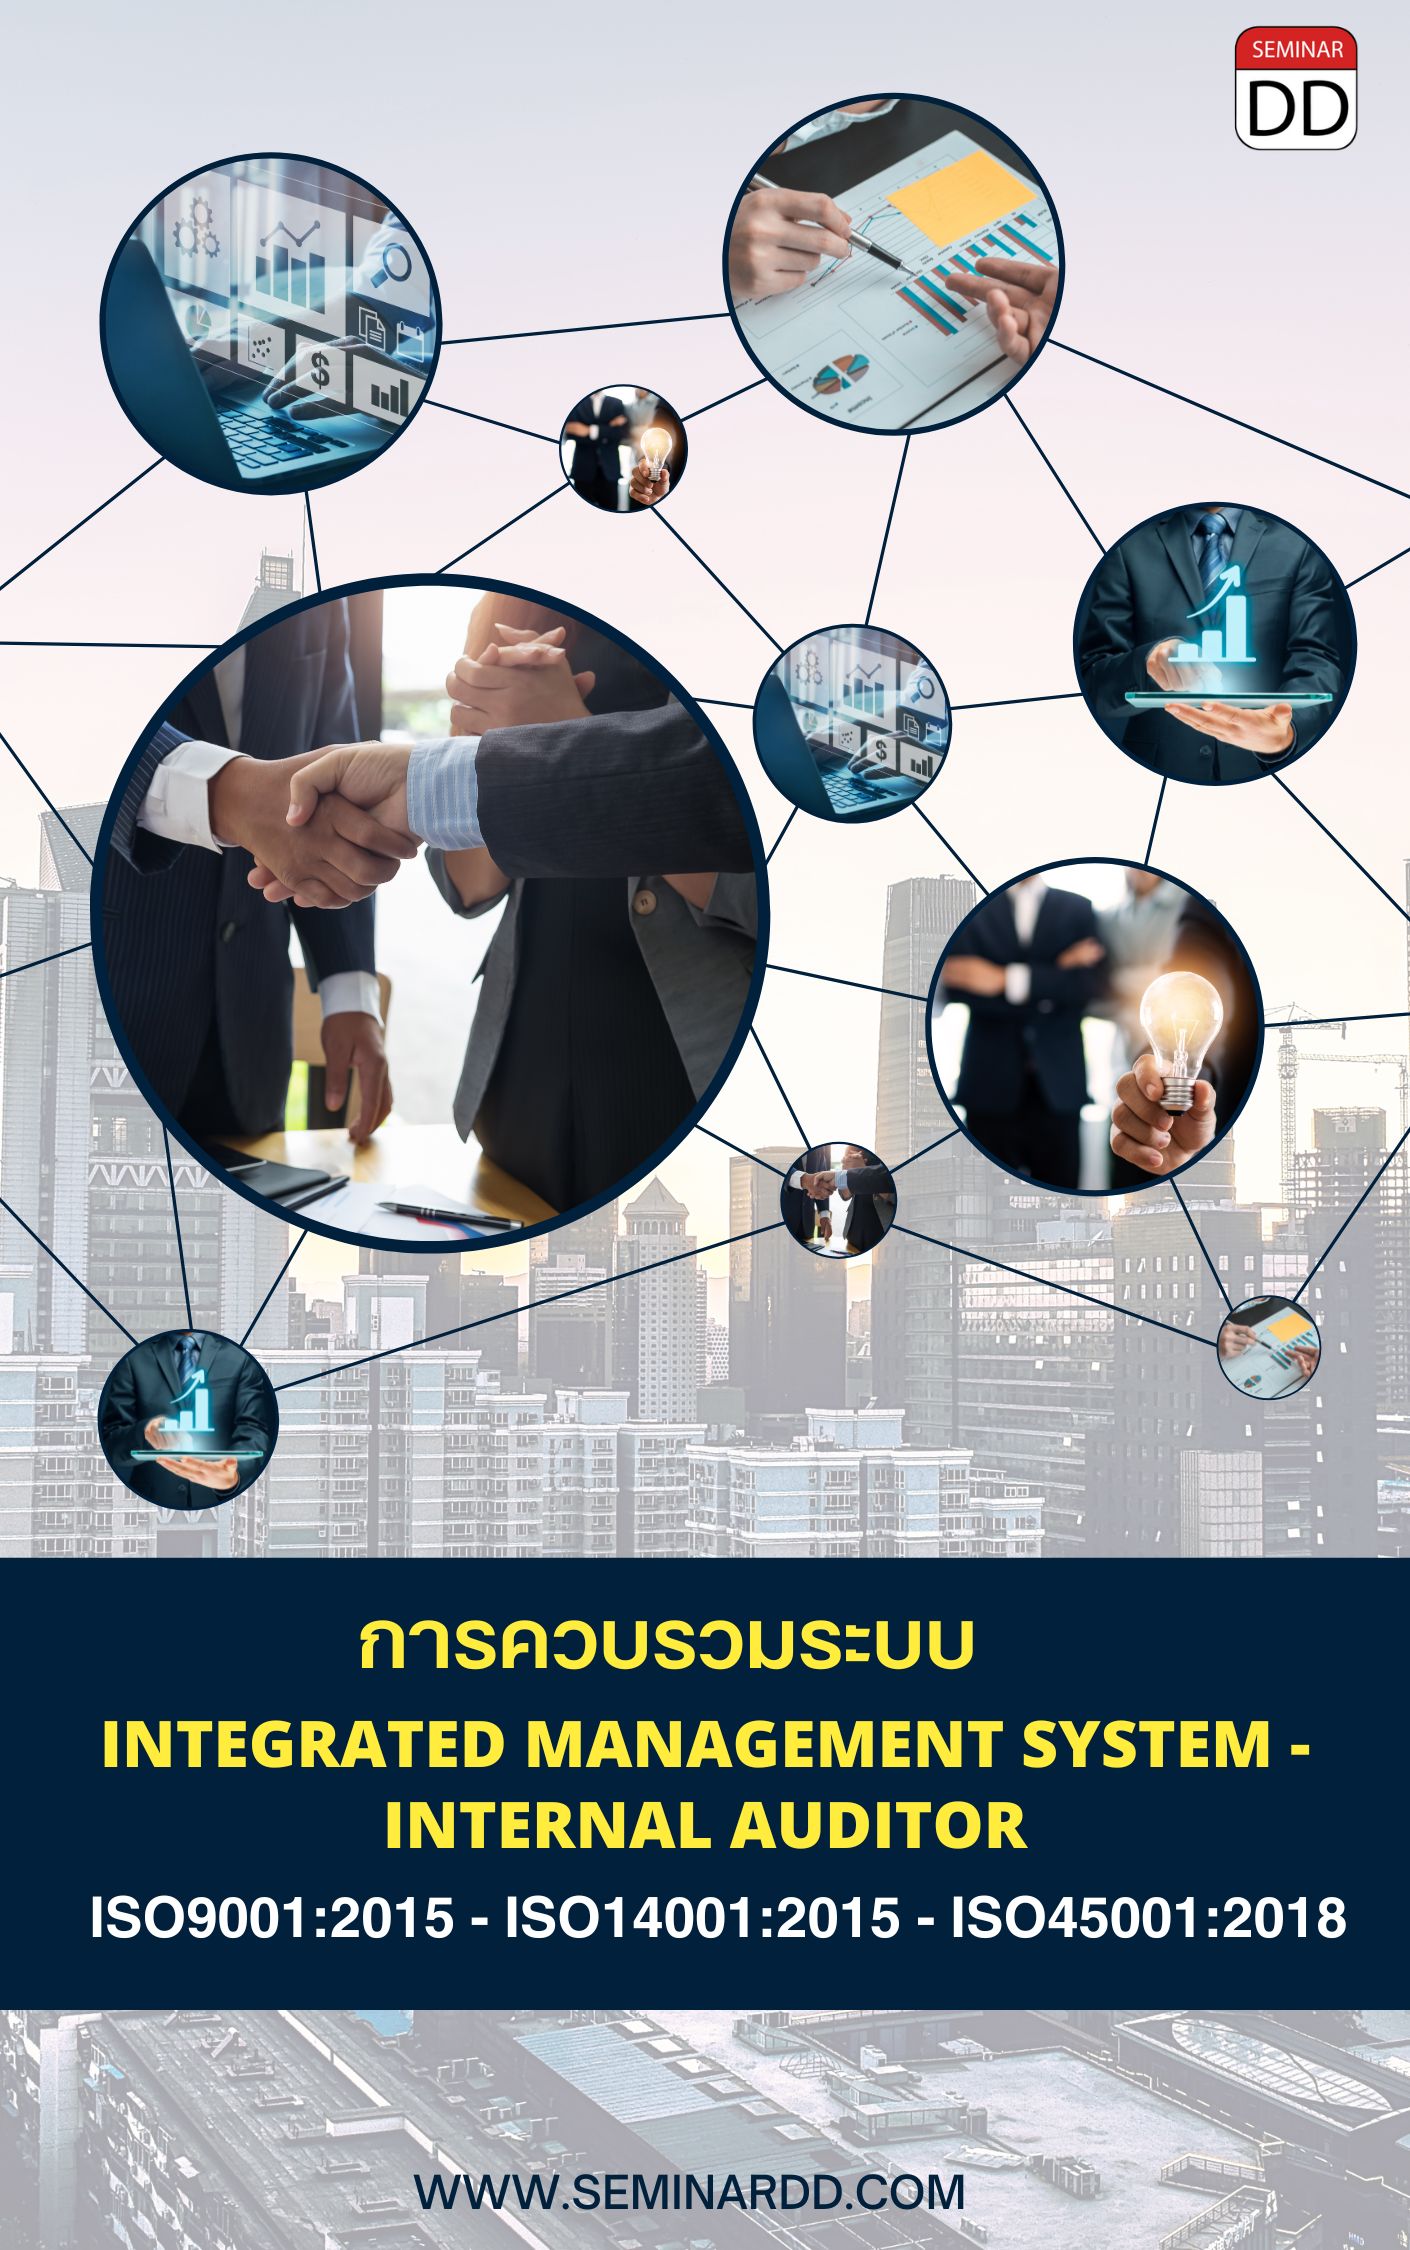 หลักสูตร การควบรวมระบบ Integrated Management System - Internal Auditor (ISO 9001:2015, ISO 14001:2015 & ISO 45001:2018)